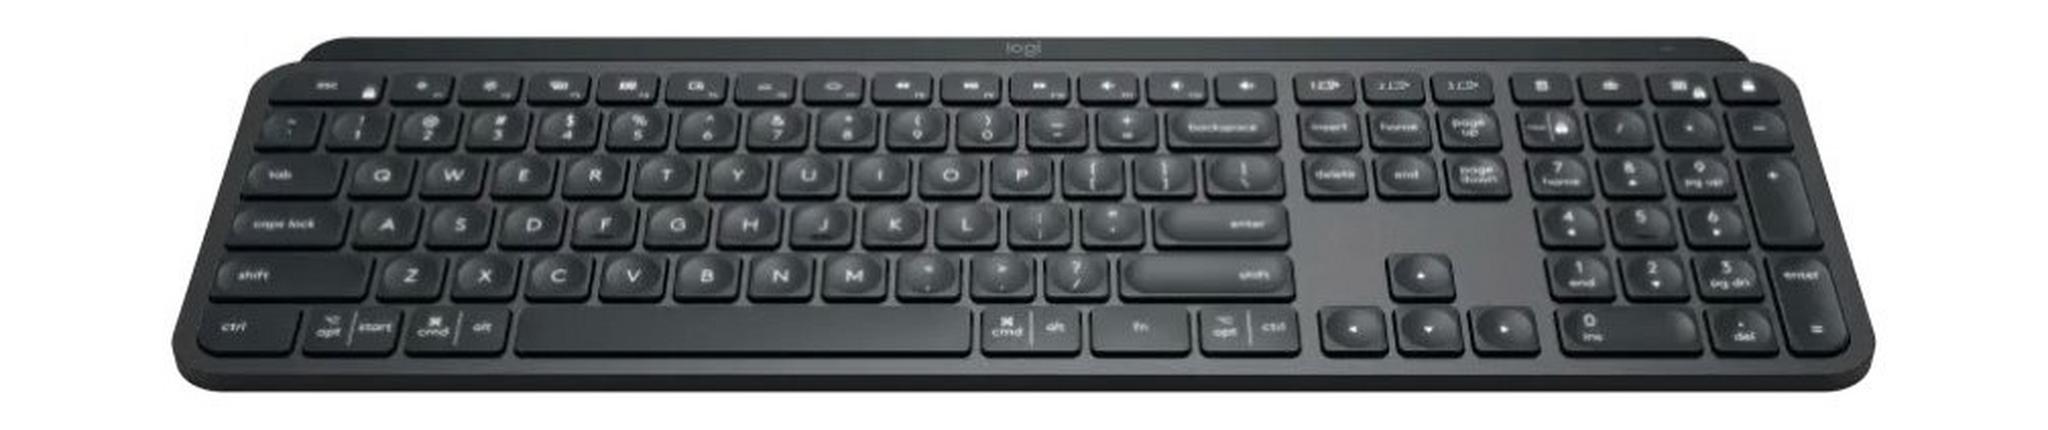 لوحة مفاتيح لوجيتك MX المتقدمة اللاسلكية المضيئة - جرافيت